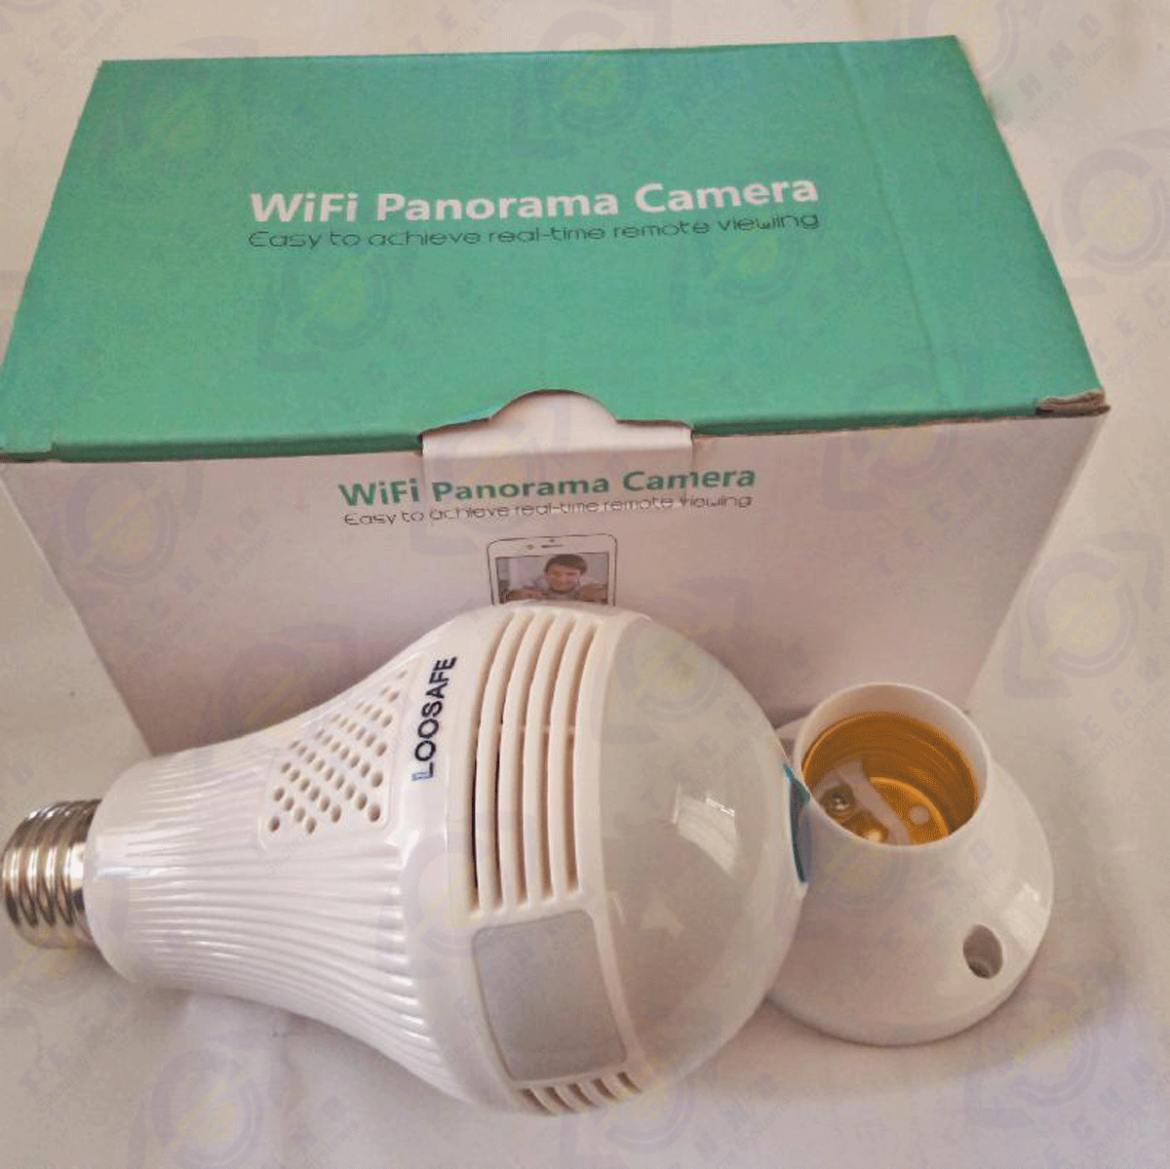 خرید لامپ دوربین دار v380 با قیمت عالی